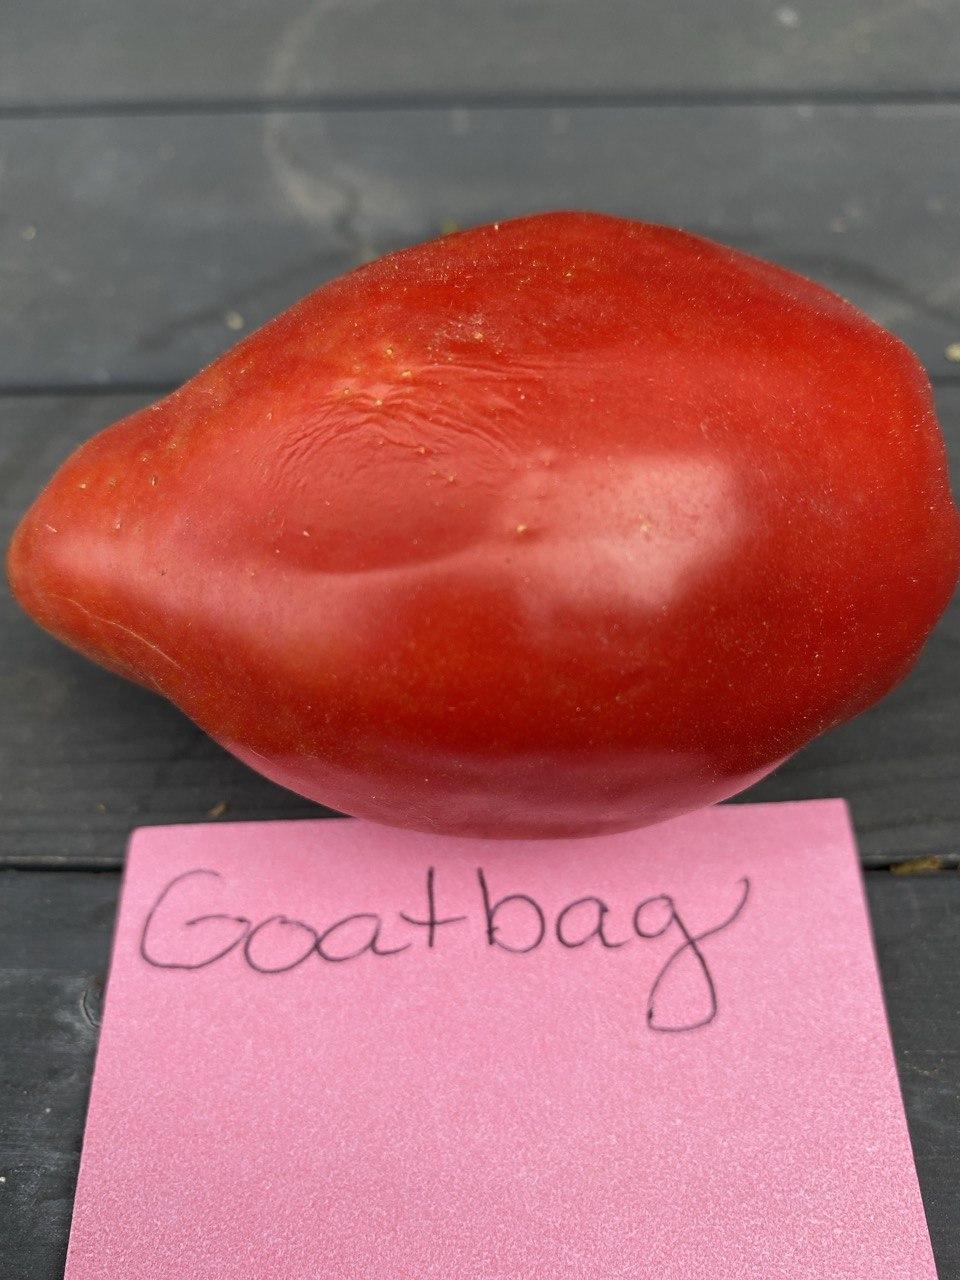 Photo of Tomato (Solanum lycopersicum 'Goatbag') uploaded by CorabethGodsey